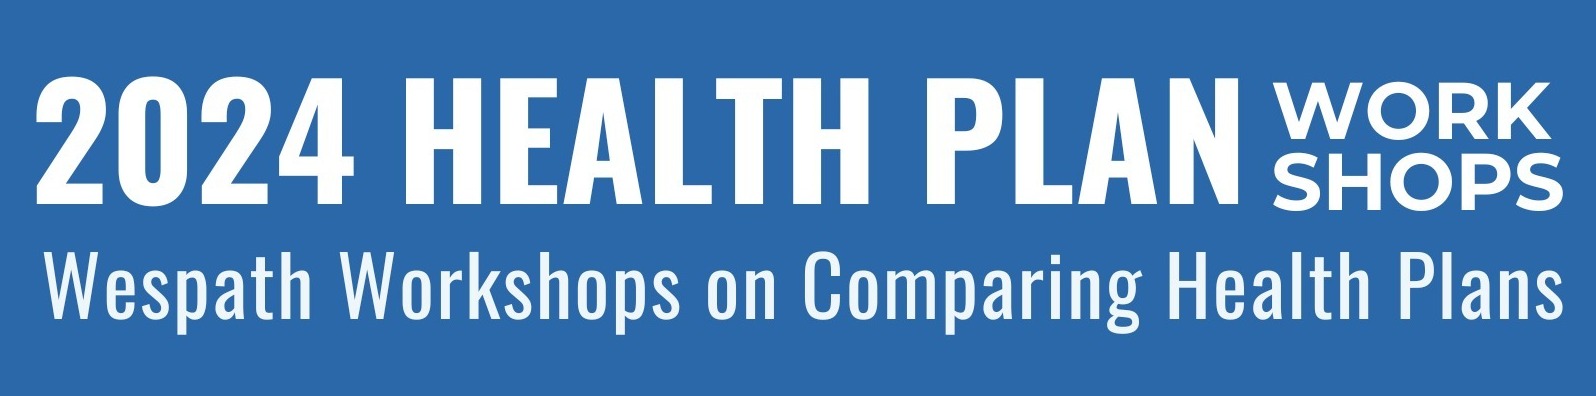 Health Plan Workshop 2023 Banner